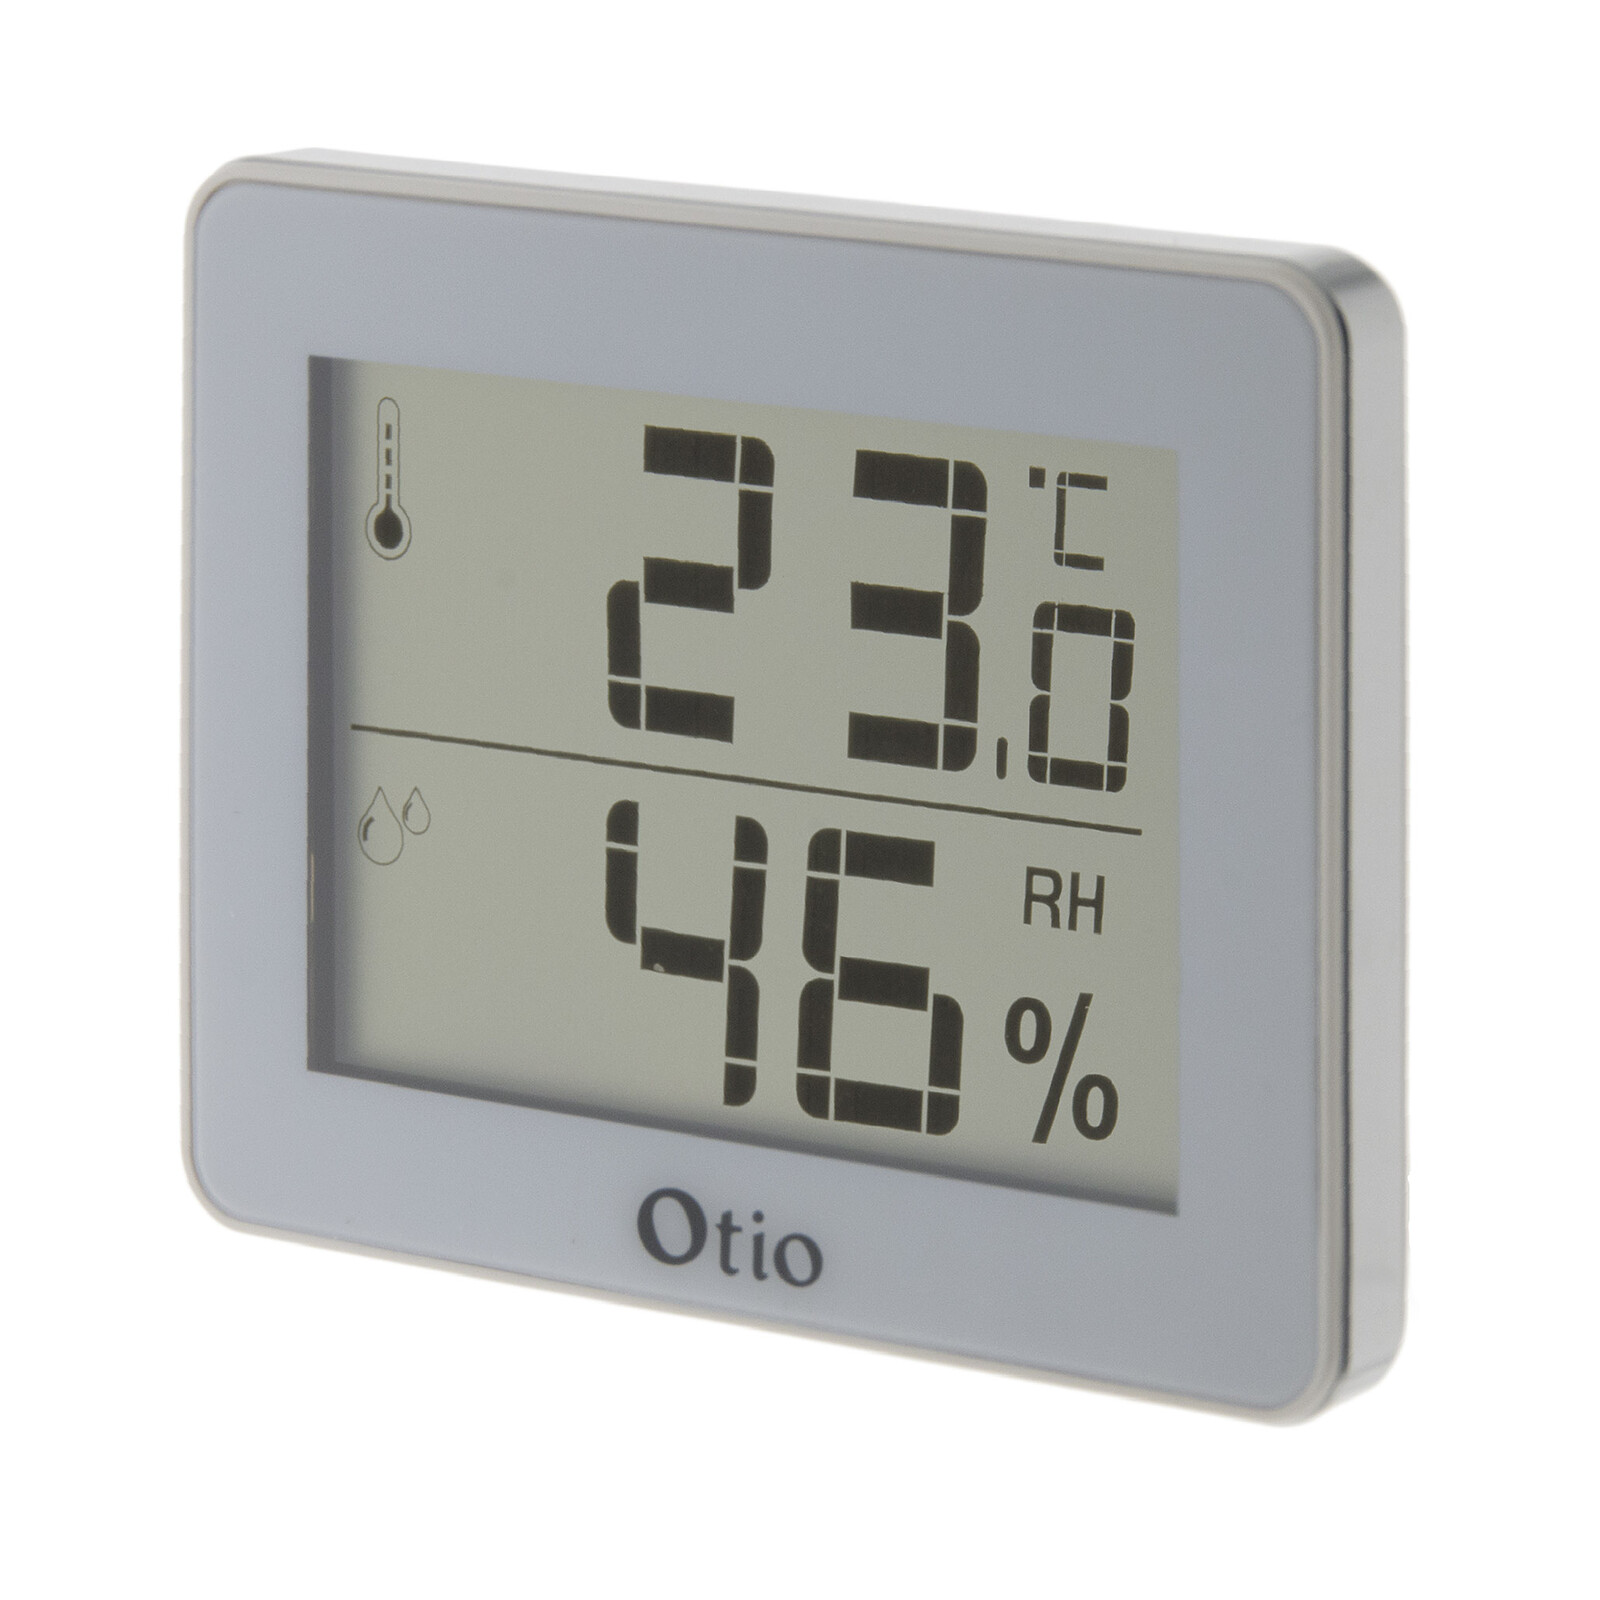 Thermomètre intérieur / Extérieur filaire Blanc - Otio - Station Météo -  LDLC